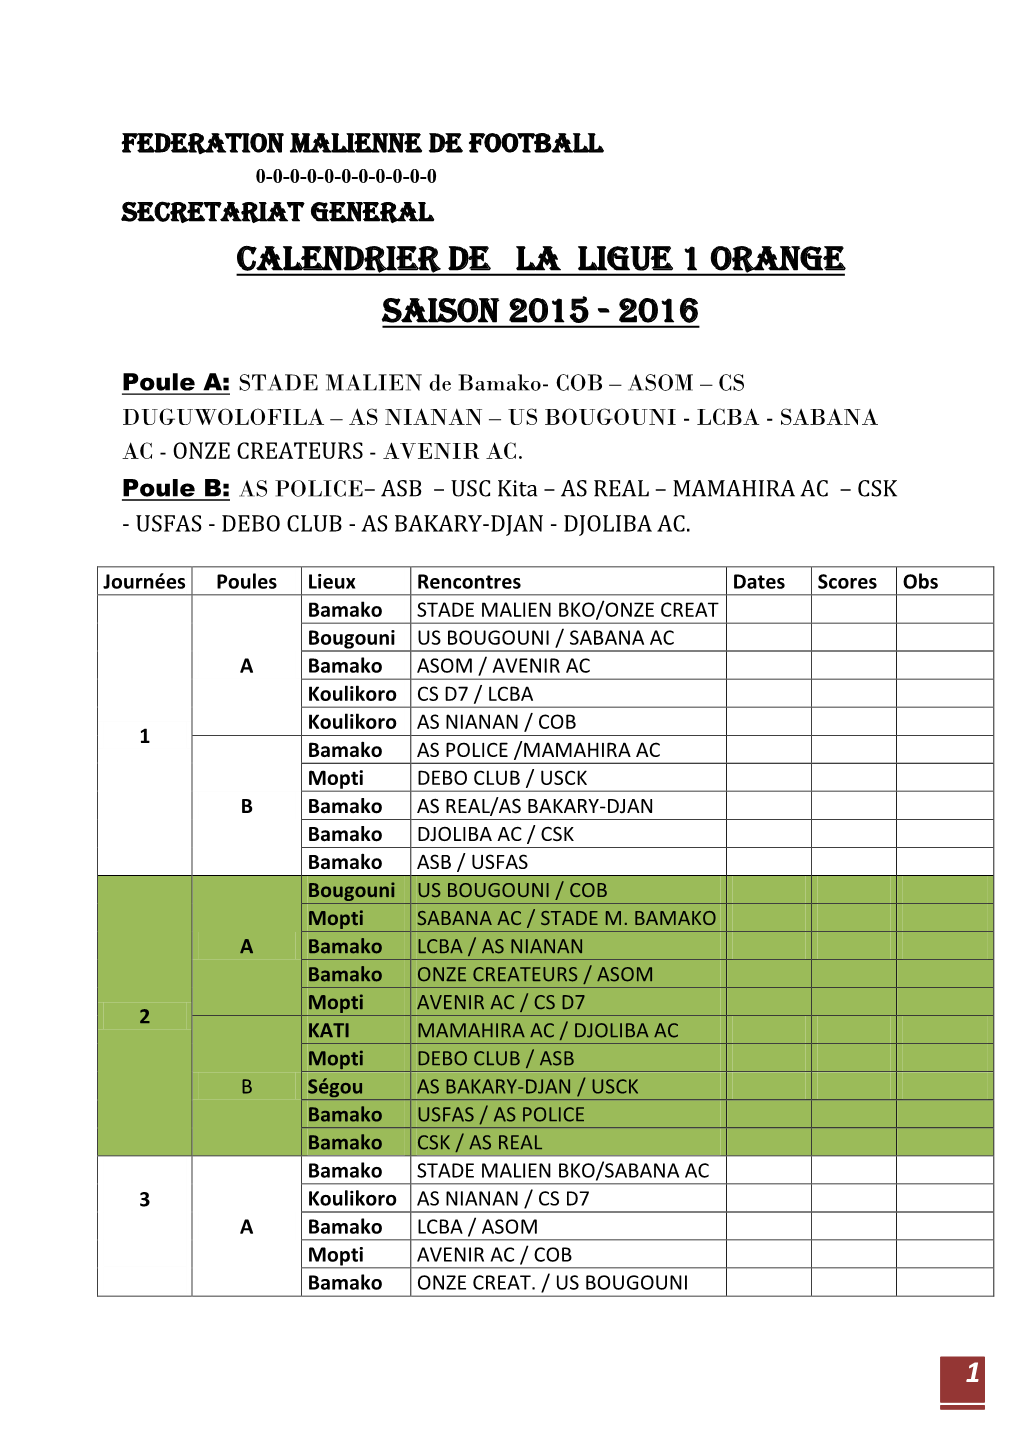 CALENDRIER DE LA LIGUE 1 Orange SAISON 2015 - 2016